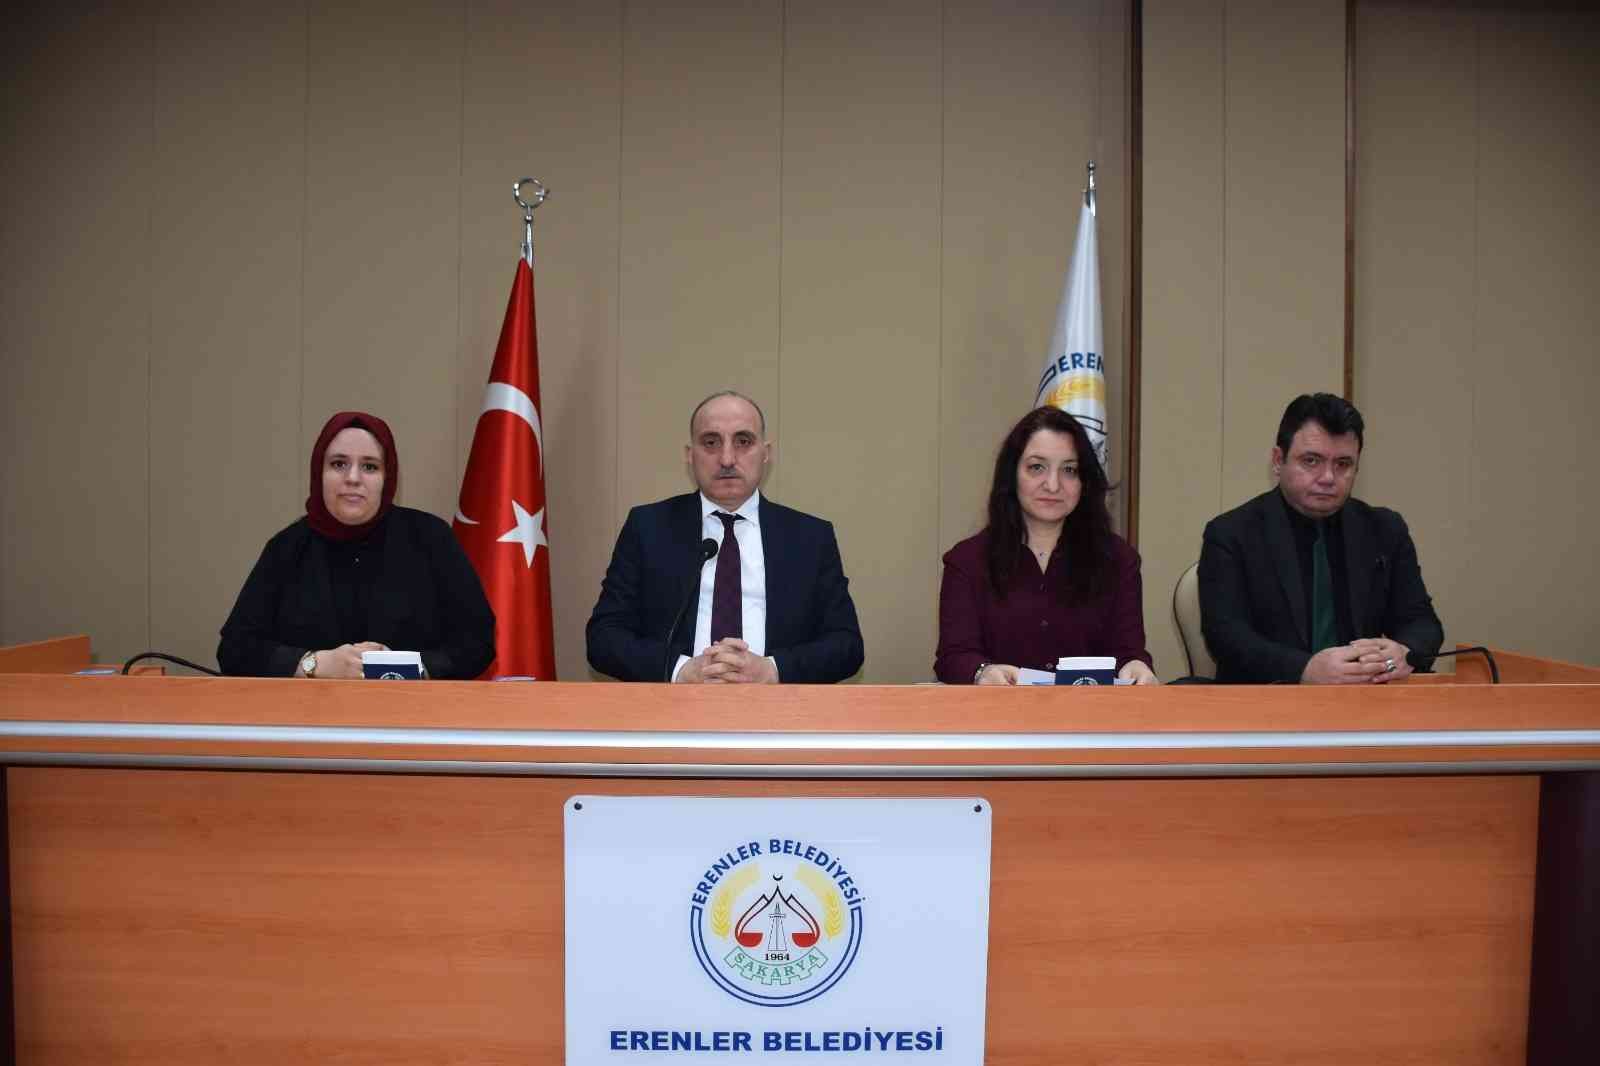 Erenler Belediyesi’nin mart ayı meclis toplantısı gerçekleştirildi